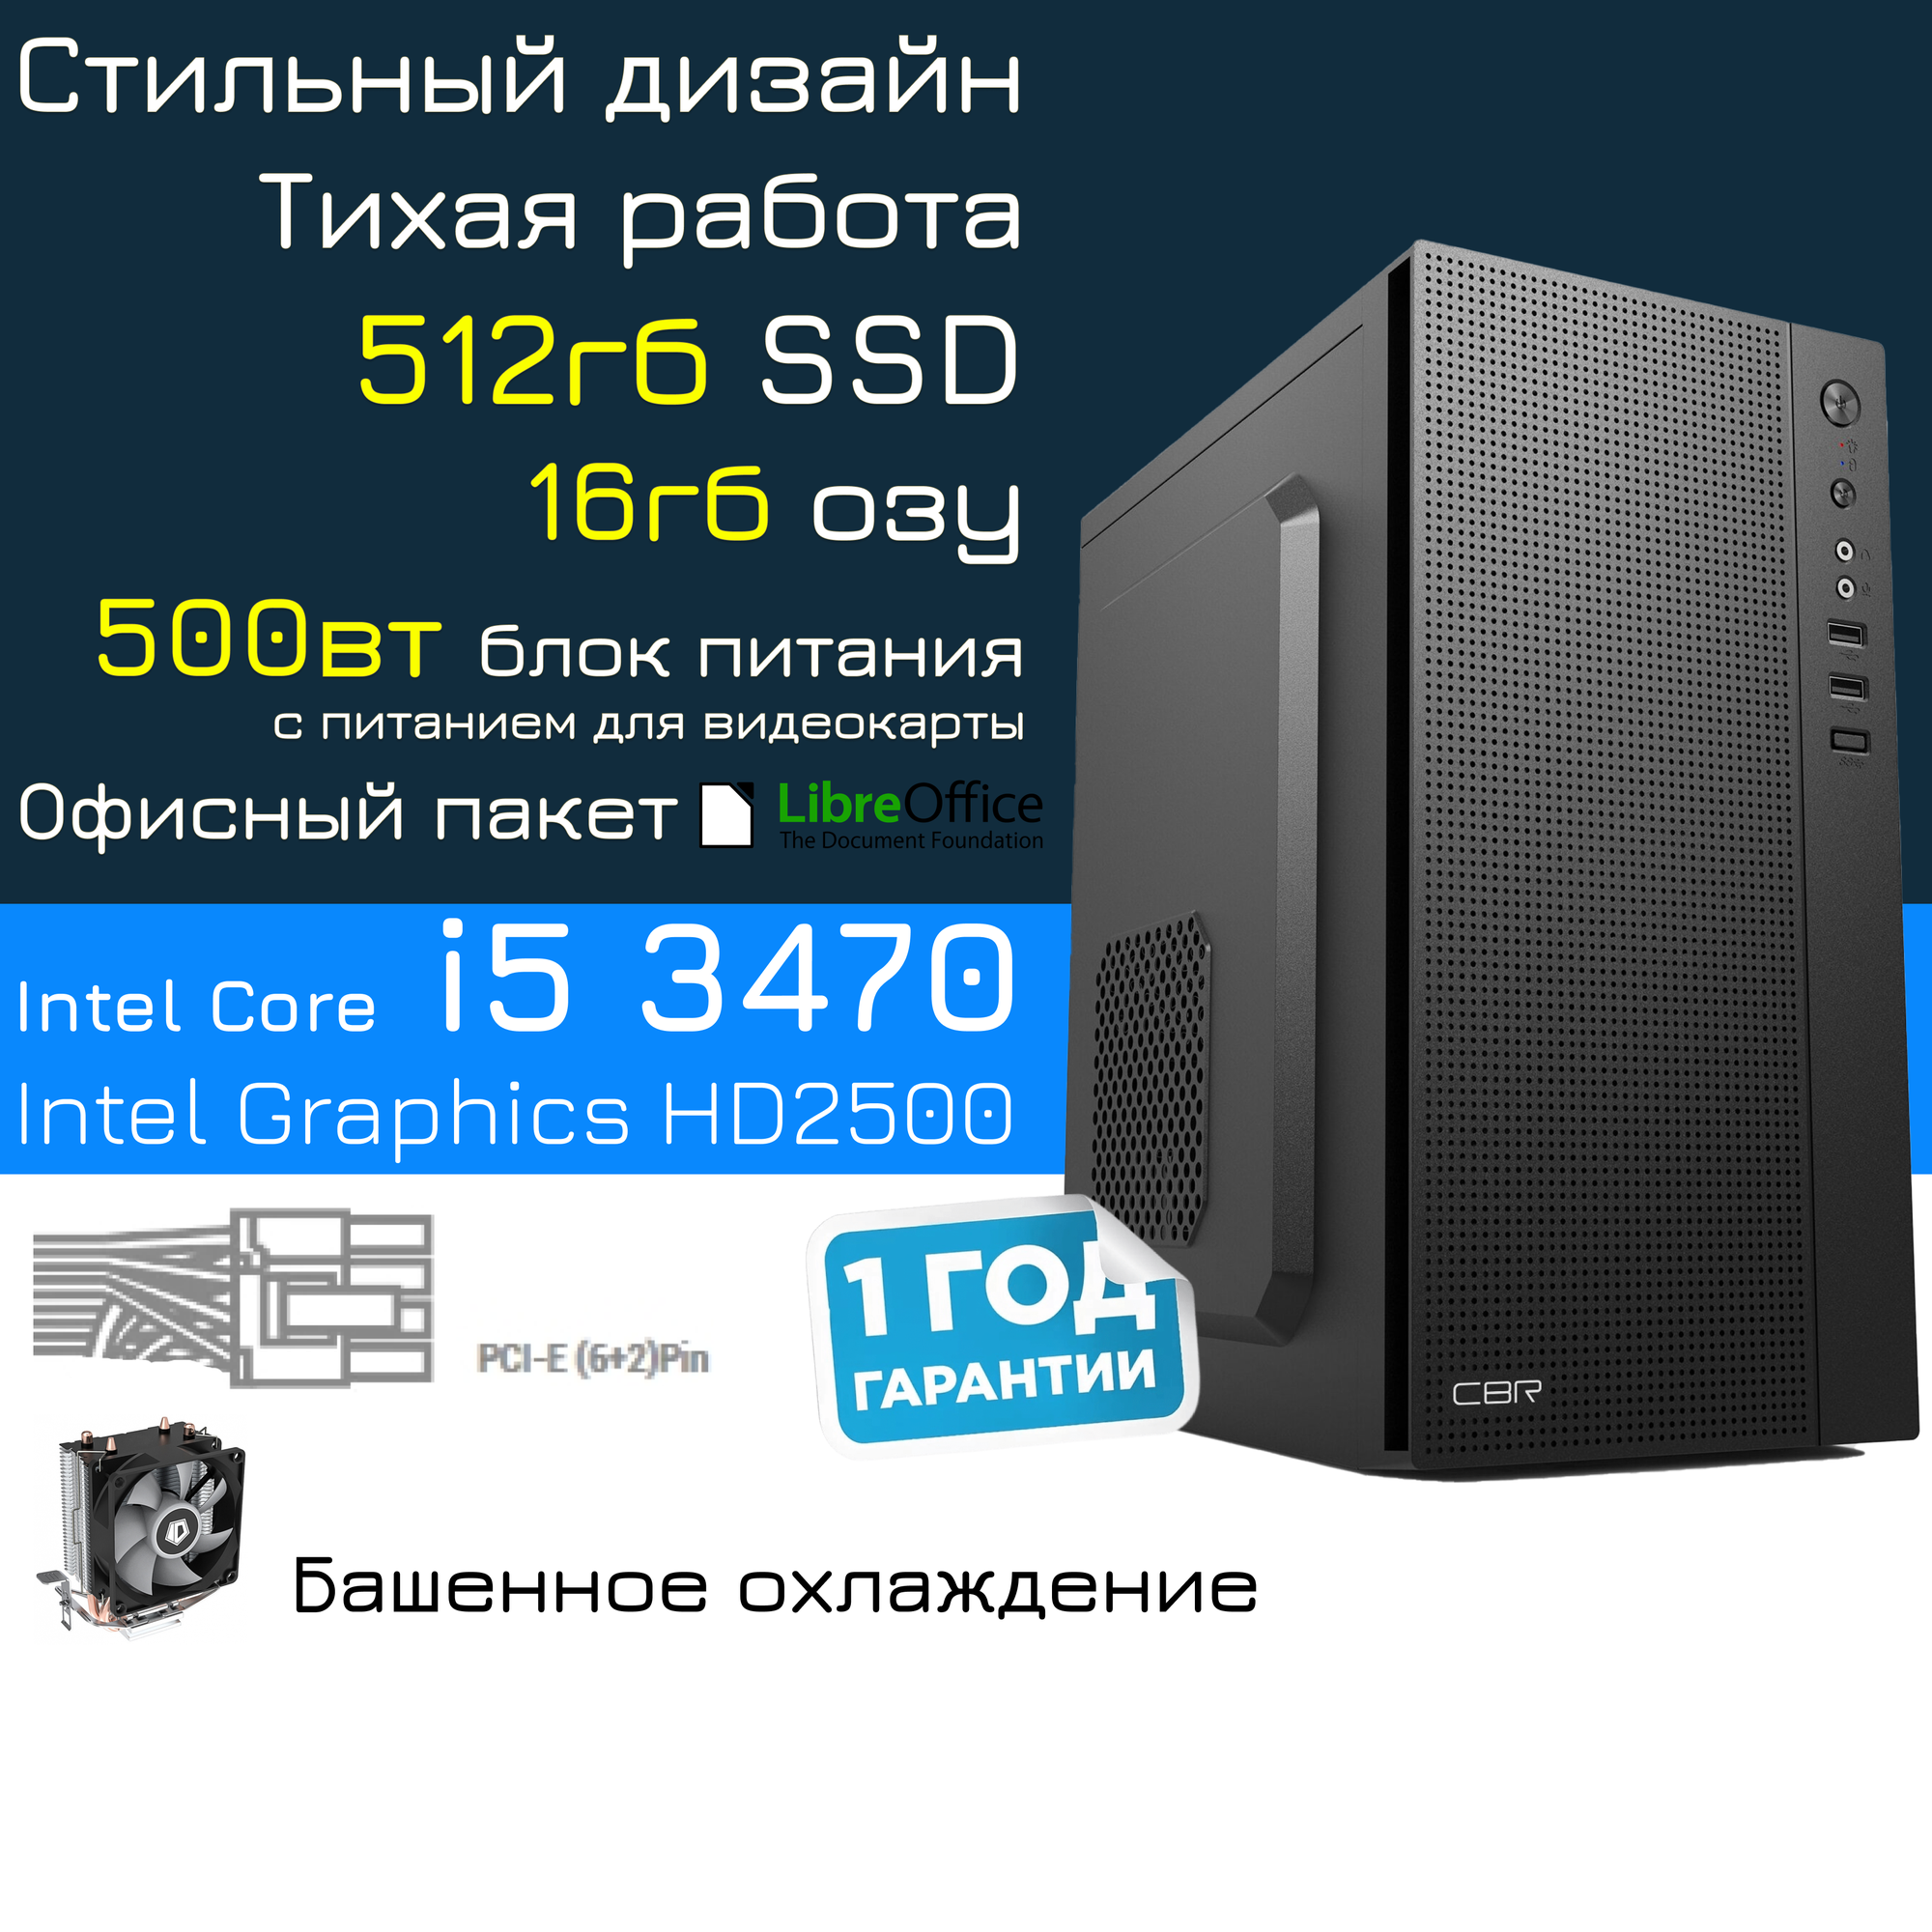 Системный блок Combo i5 512gb 500w (Intel Core i5-3470 (3.2 ГГц), RAM 16 ГБ, SSD 512ГБ